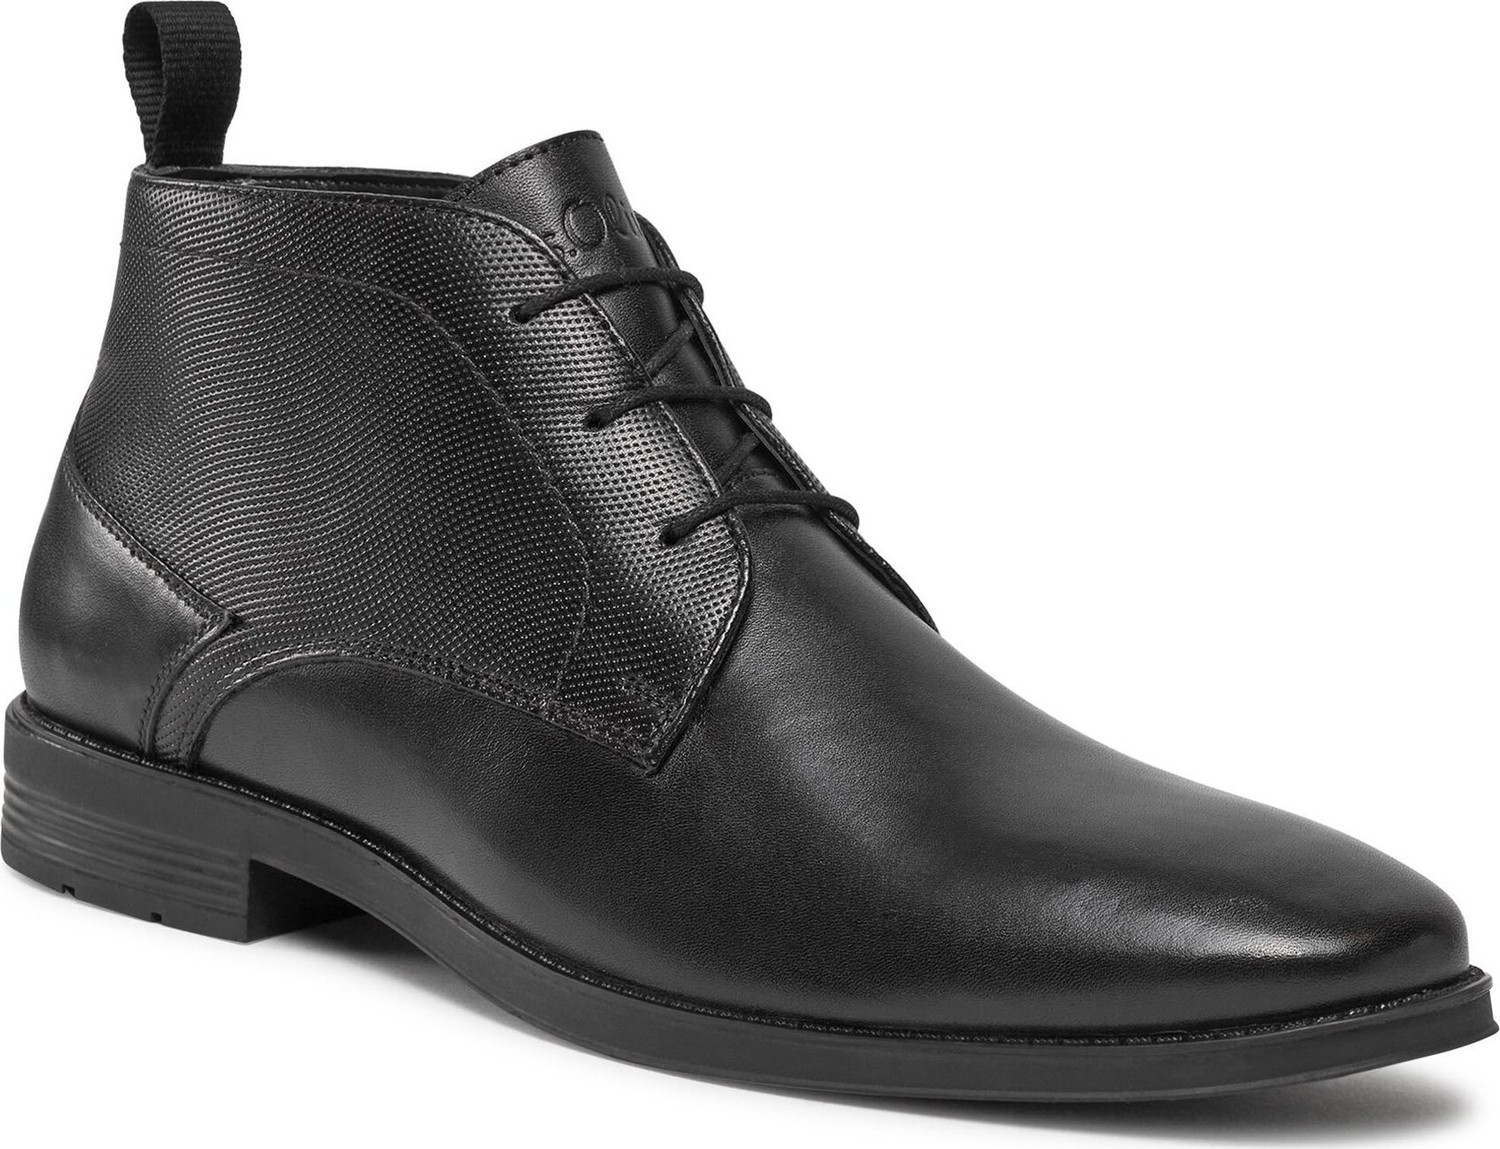 Kotníková obuv s.Oliver 5-15101-41 Black 001